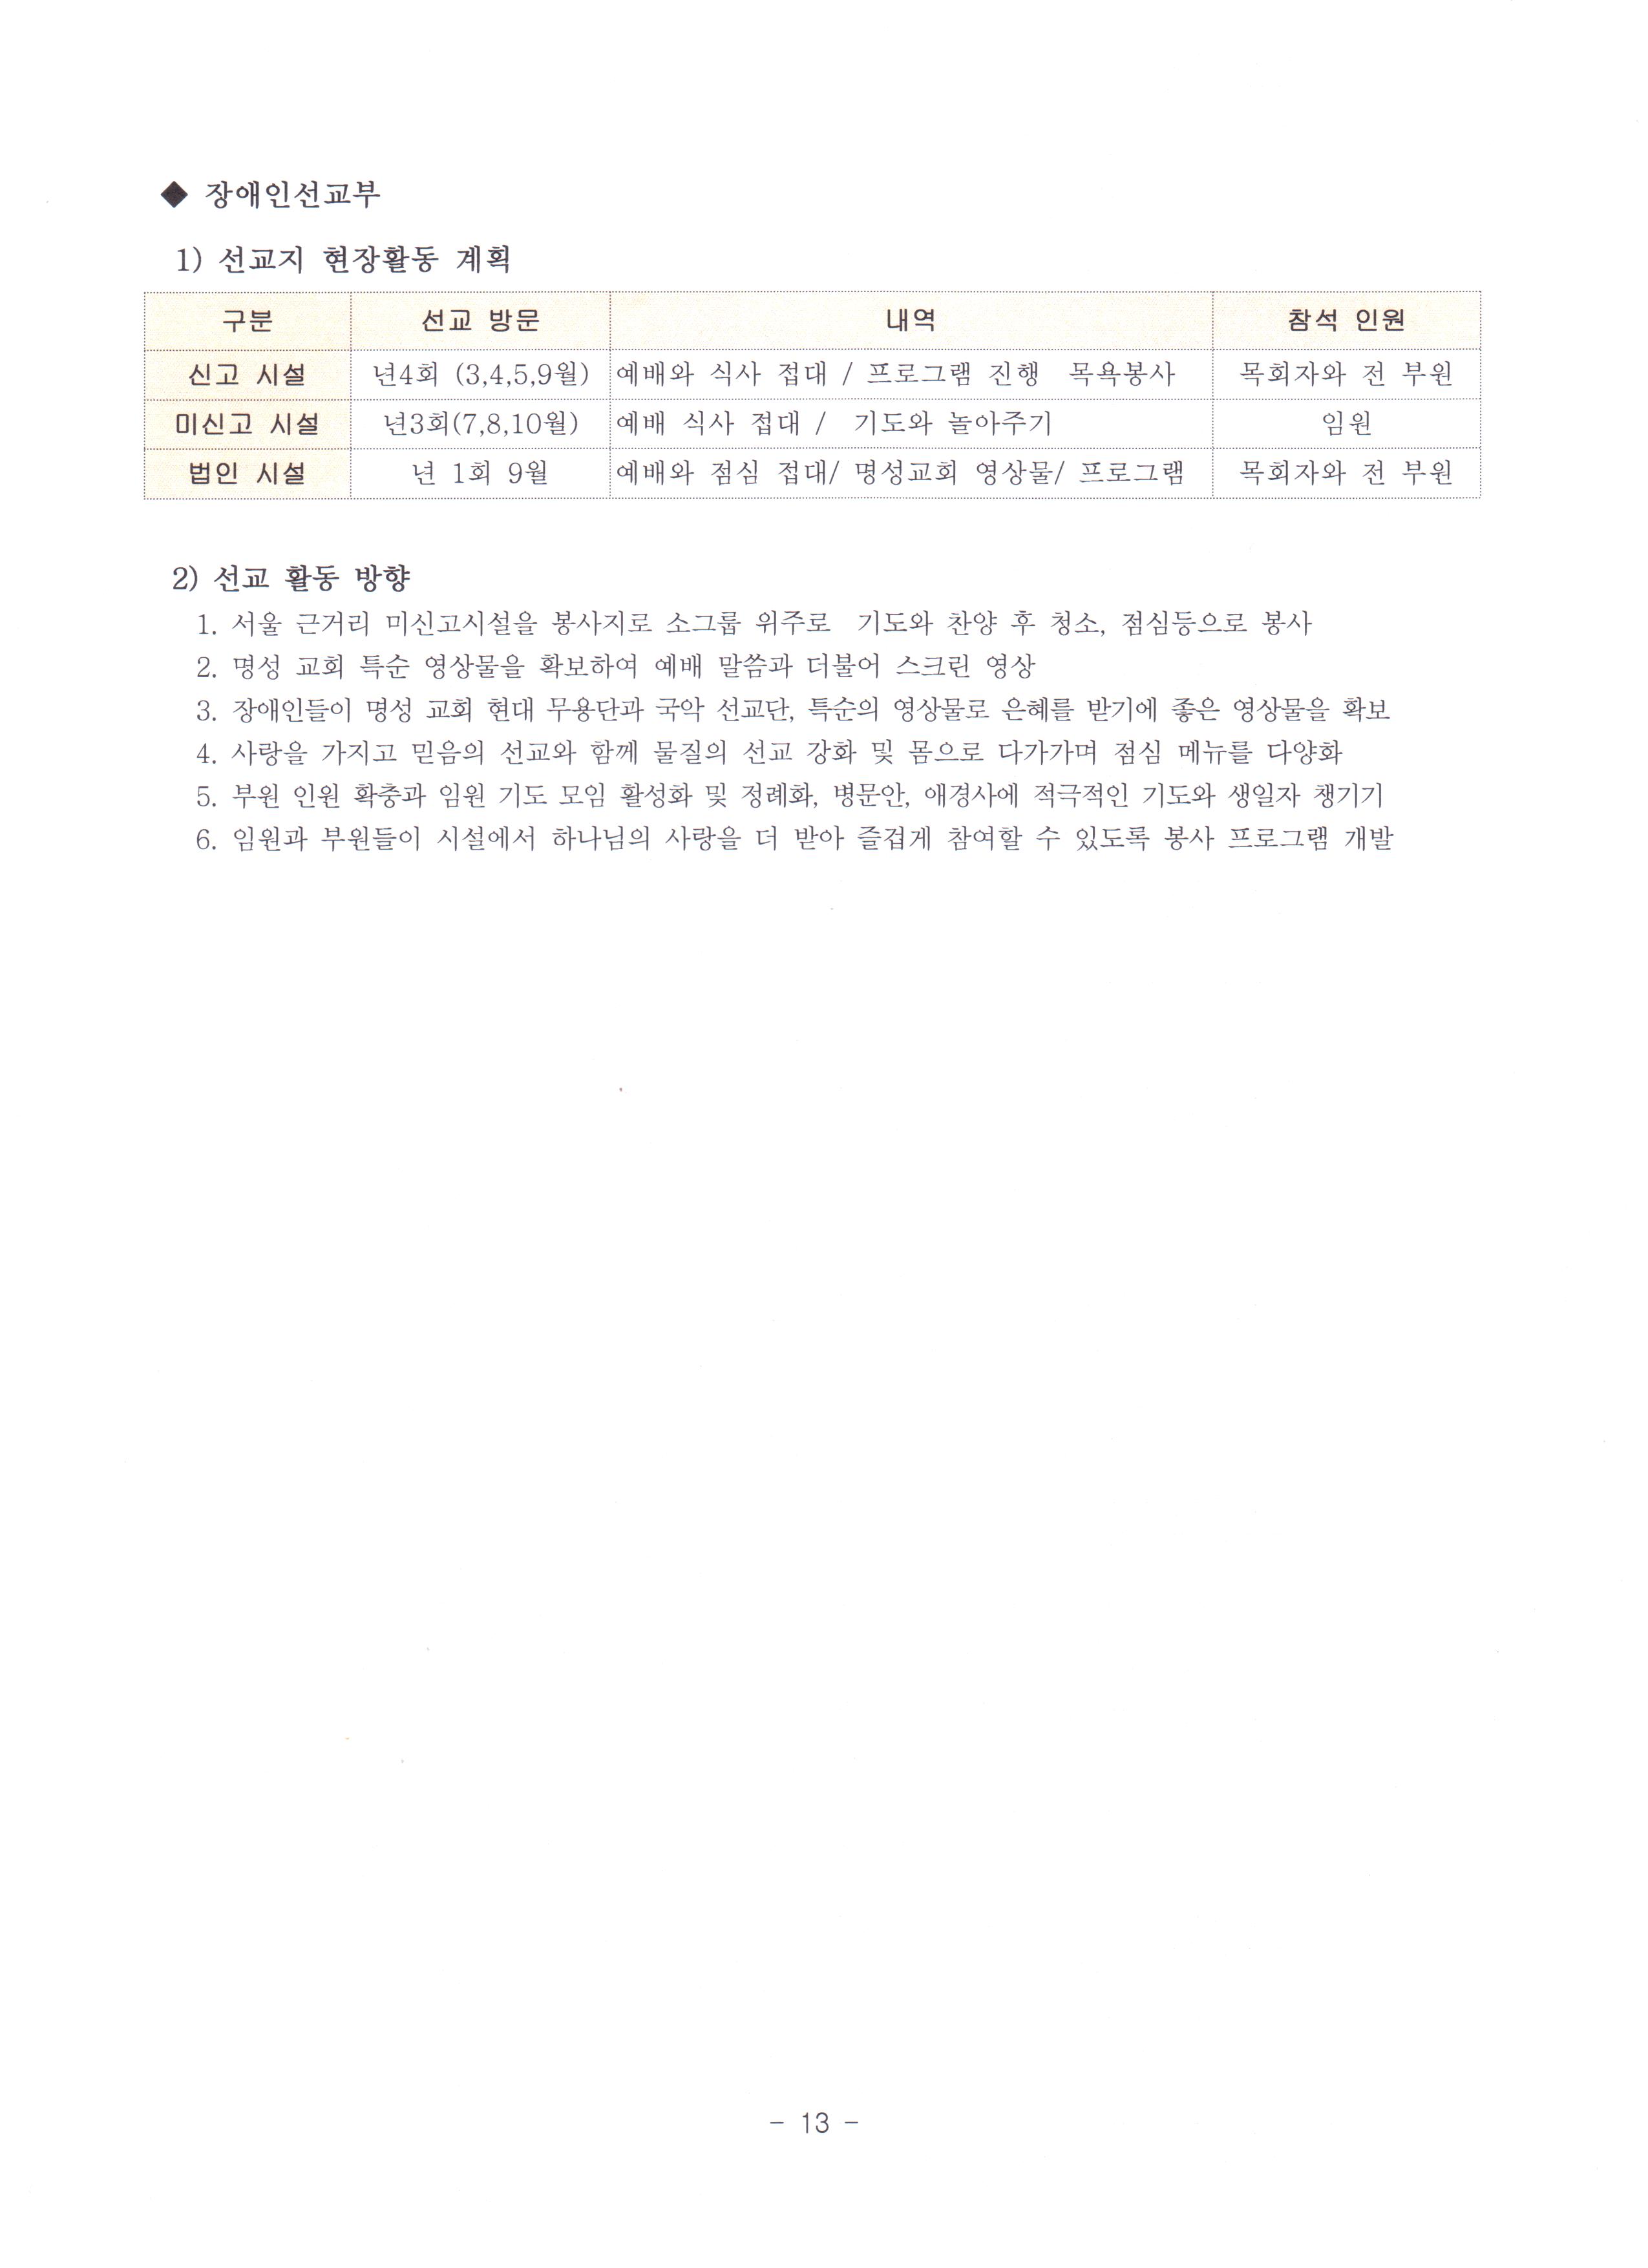 2012 특수선교위원회 정책당회자료-15.JPG